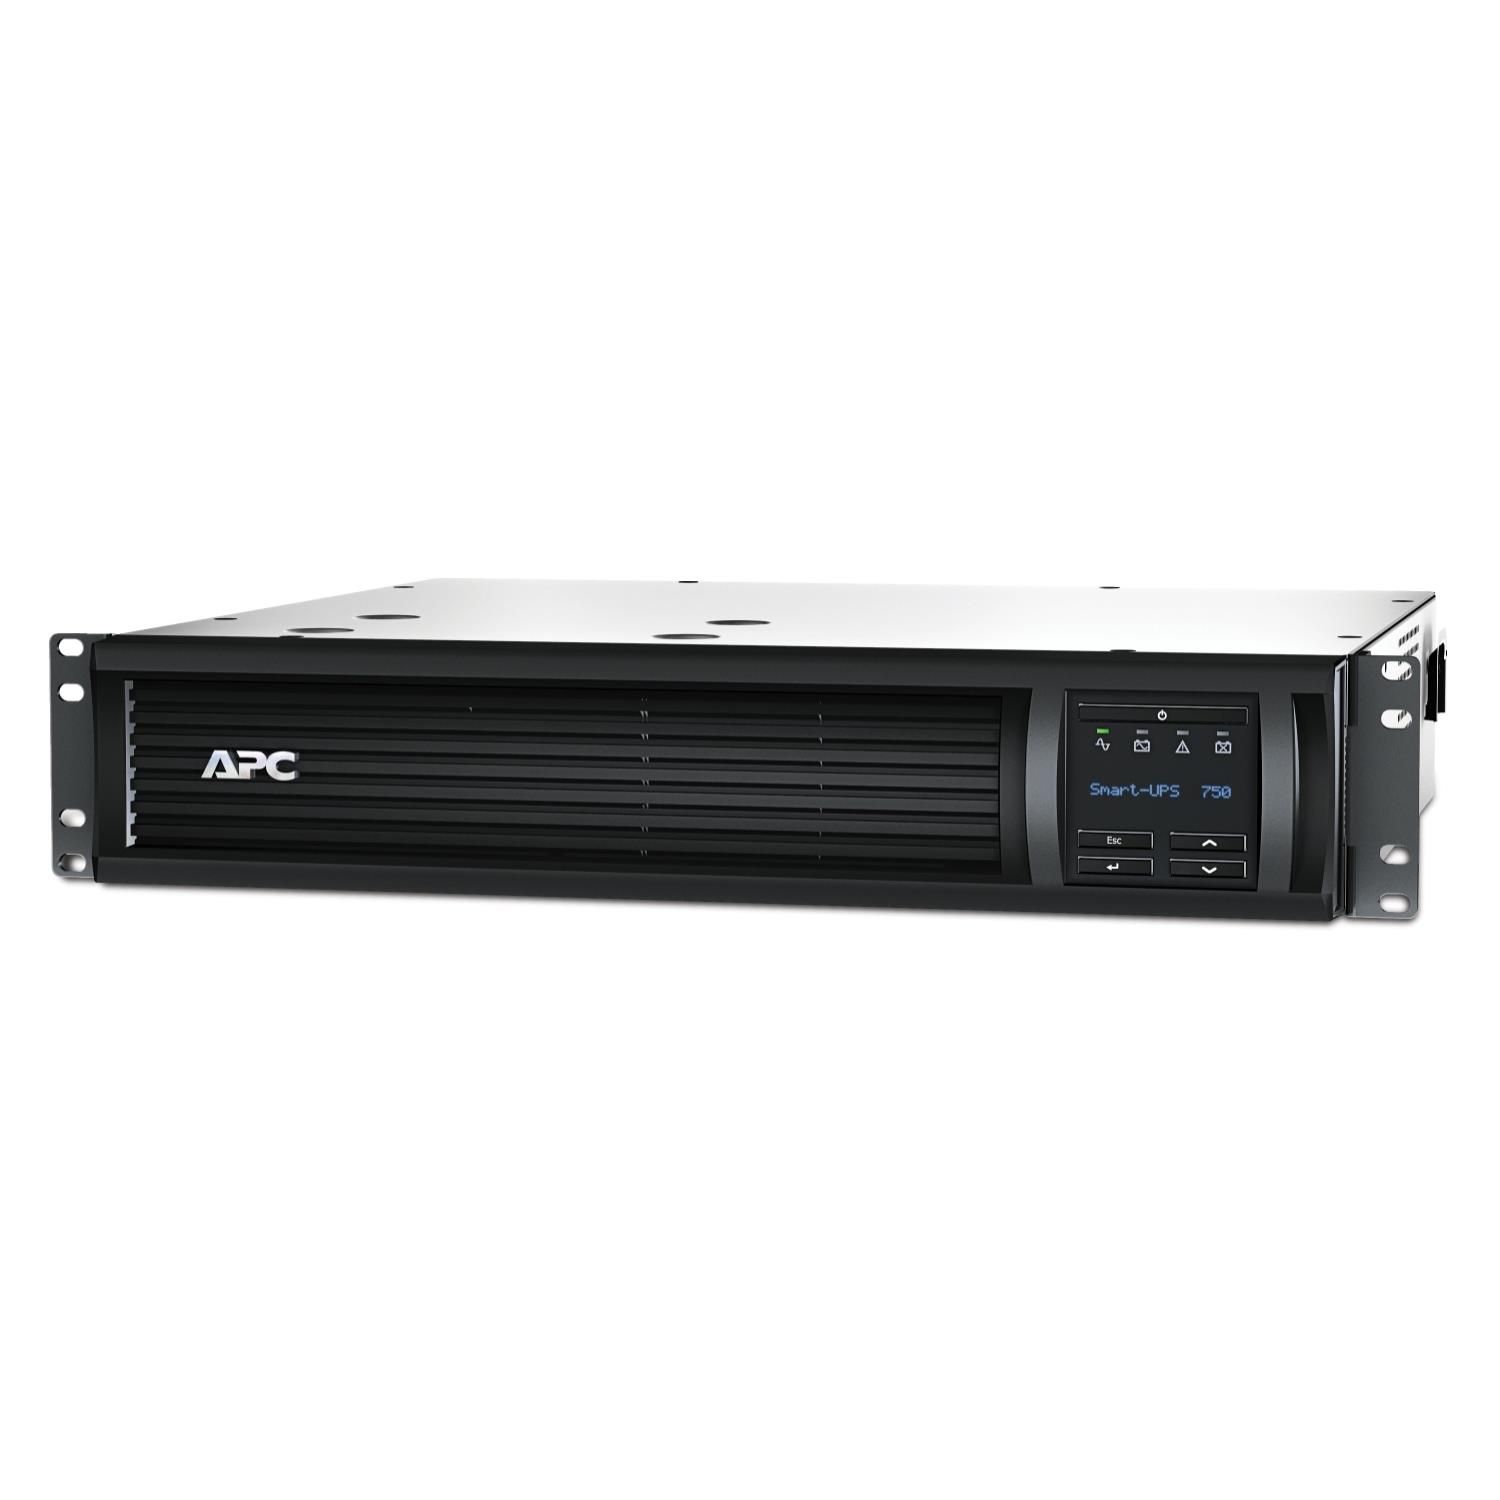 APC SMART-UPS LITHIUM ION breve profondità 1000VA 230V con smartconnect linea-interazione 